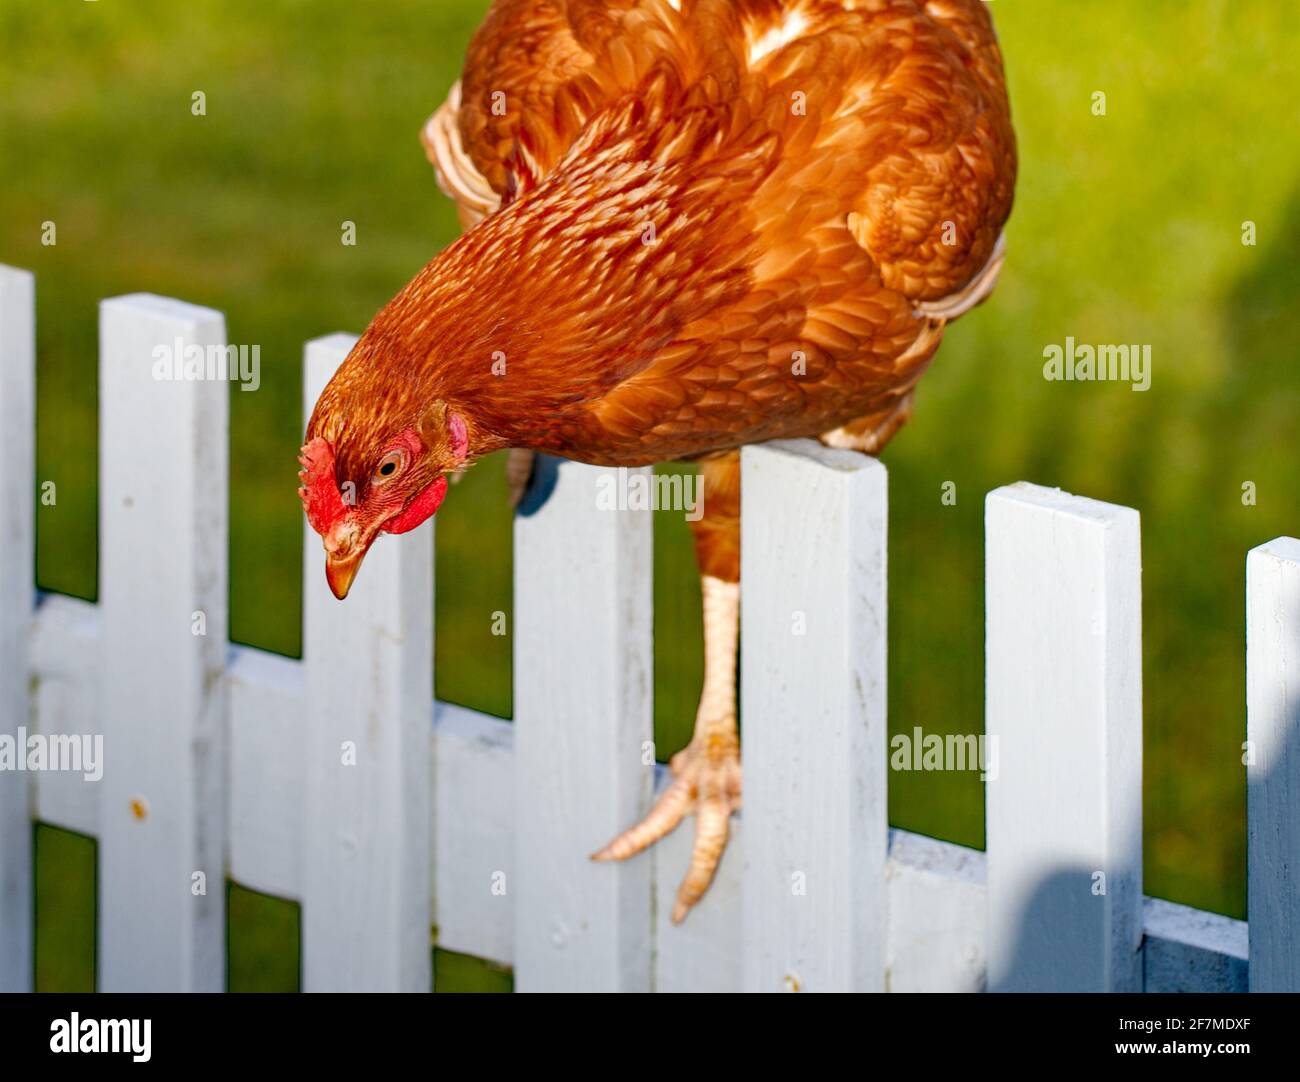 Une jeune fille qui s'échappe au-dessus d'une clôture de piquet de jardin - Îles de Scilly Royaume-Uni Banque D'Images